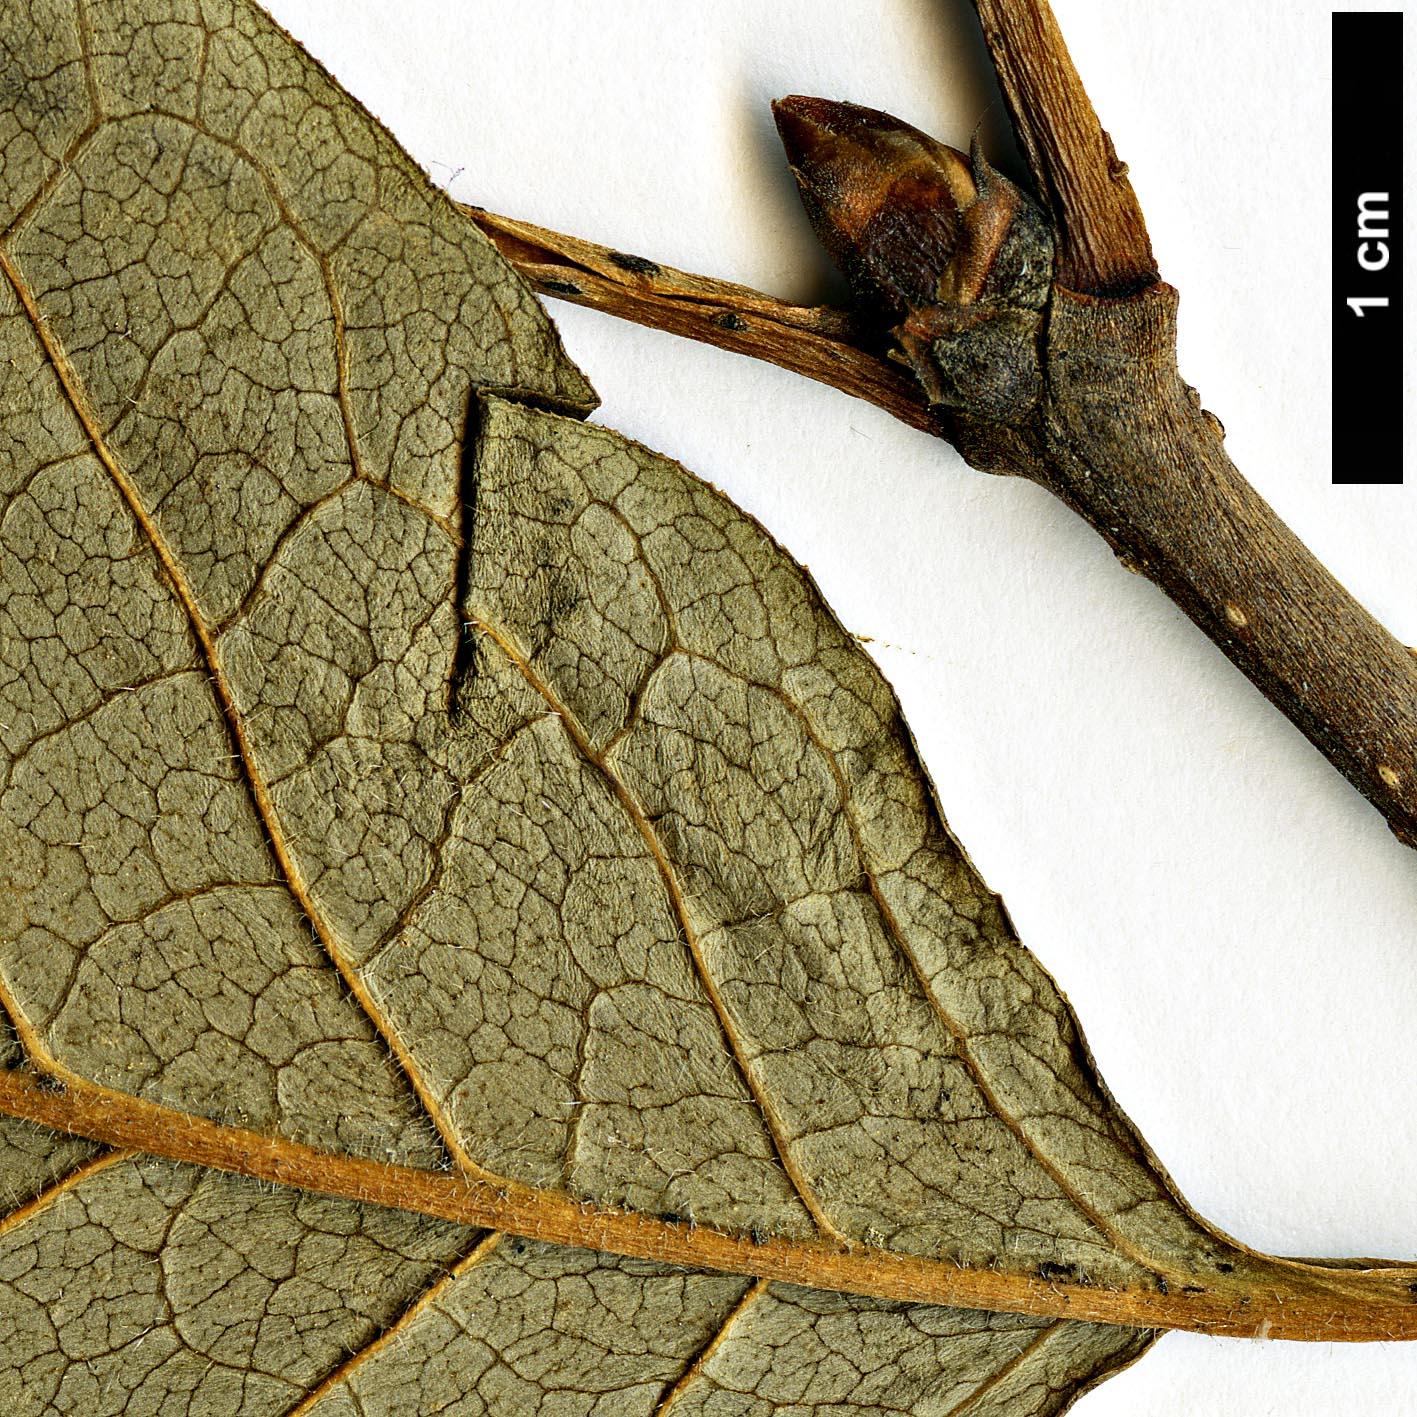 High resolution image: Family: Oleaceae - Genus: Syringa - Taxon: josikaea